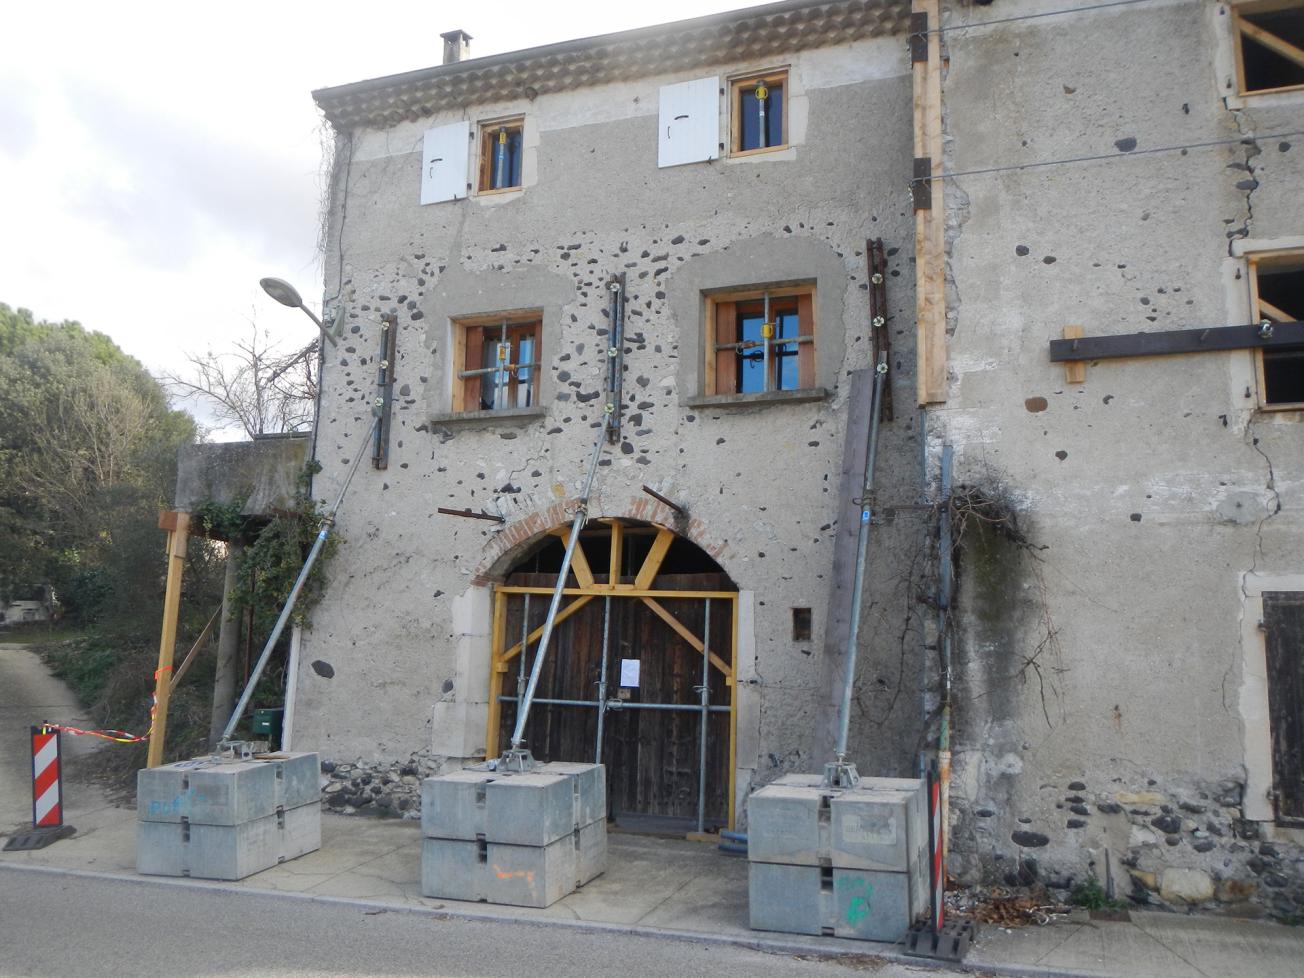 Confortement d’une maison endommagée par le séisme du Teil (commune de Viviers, 2020).